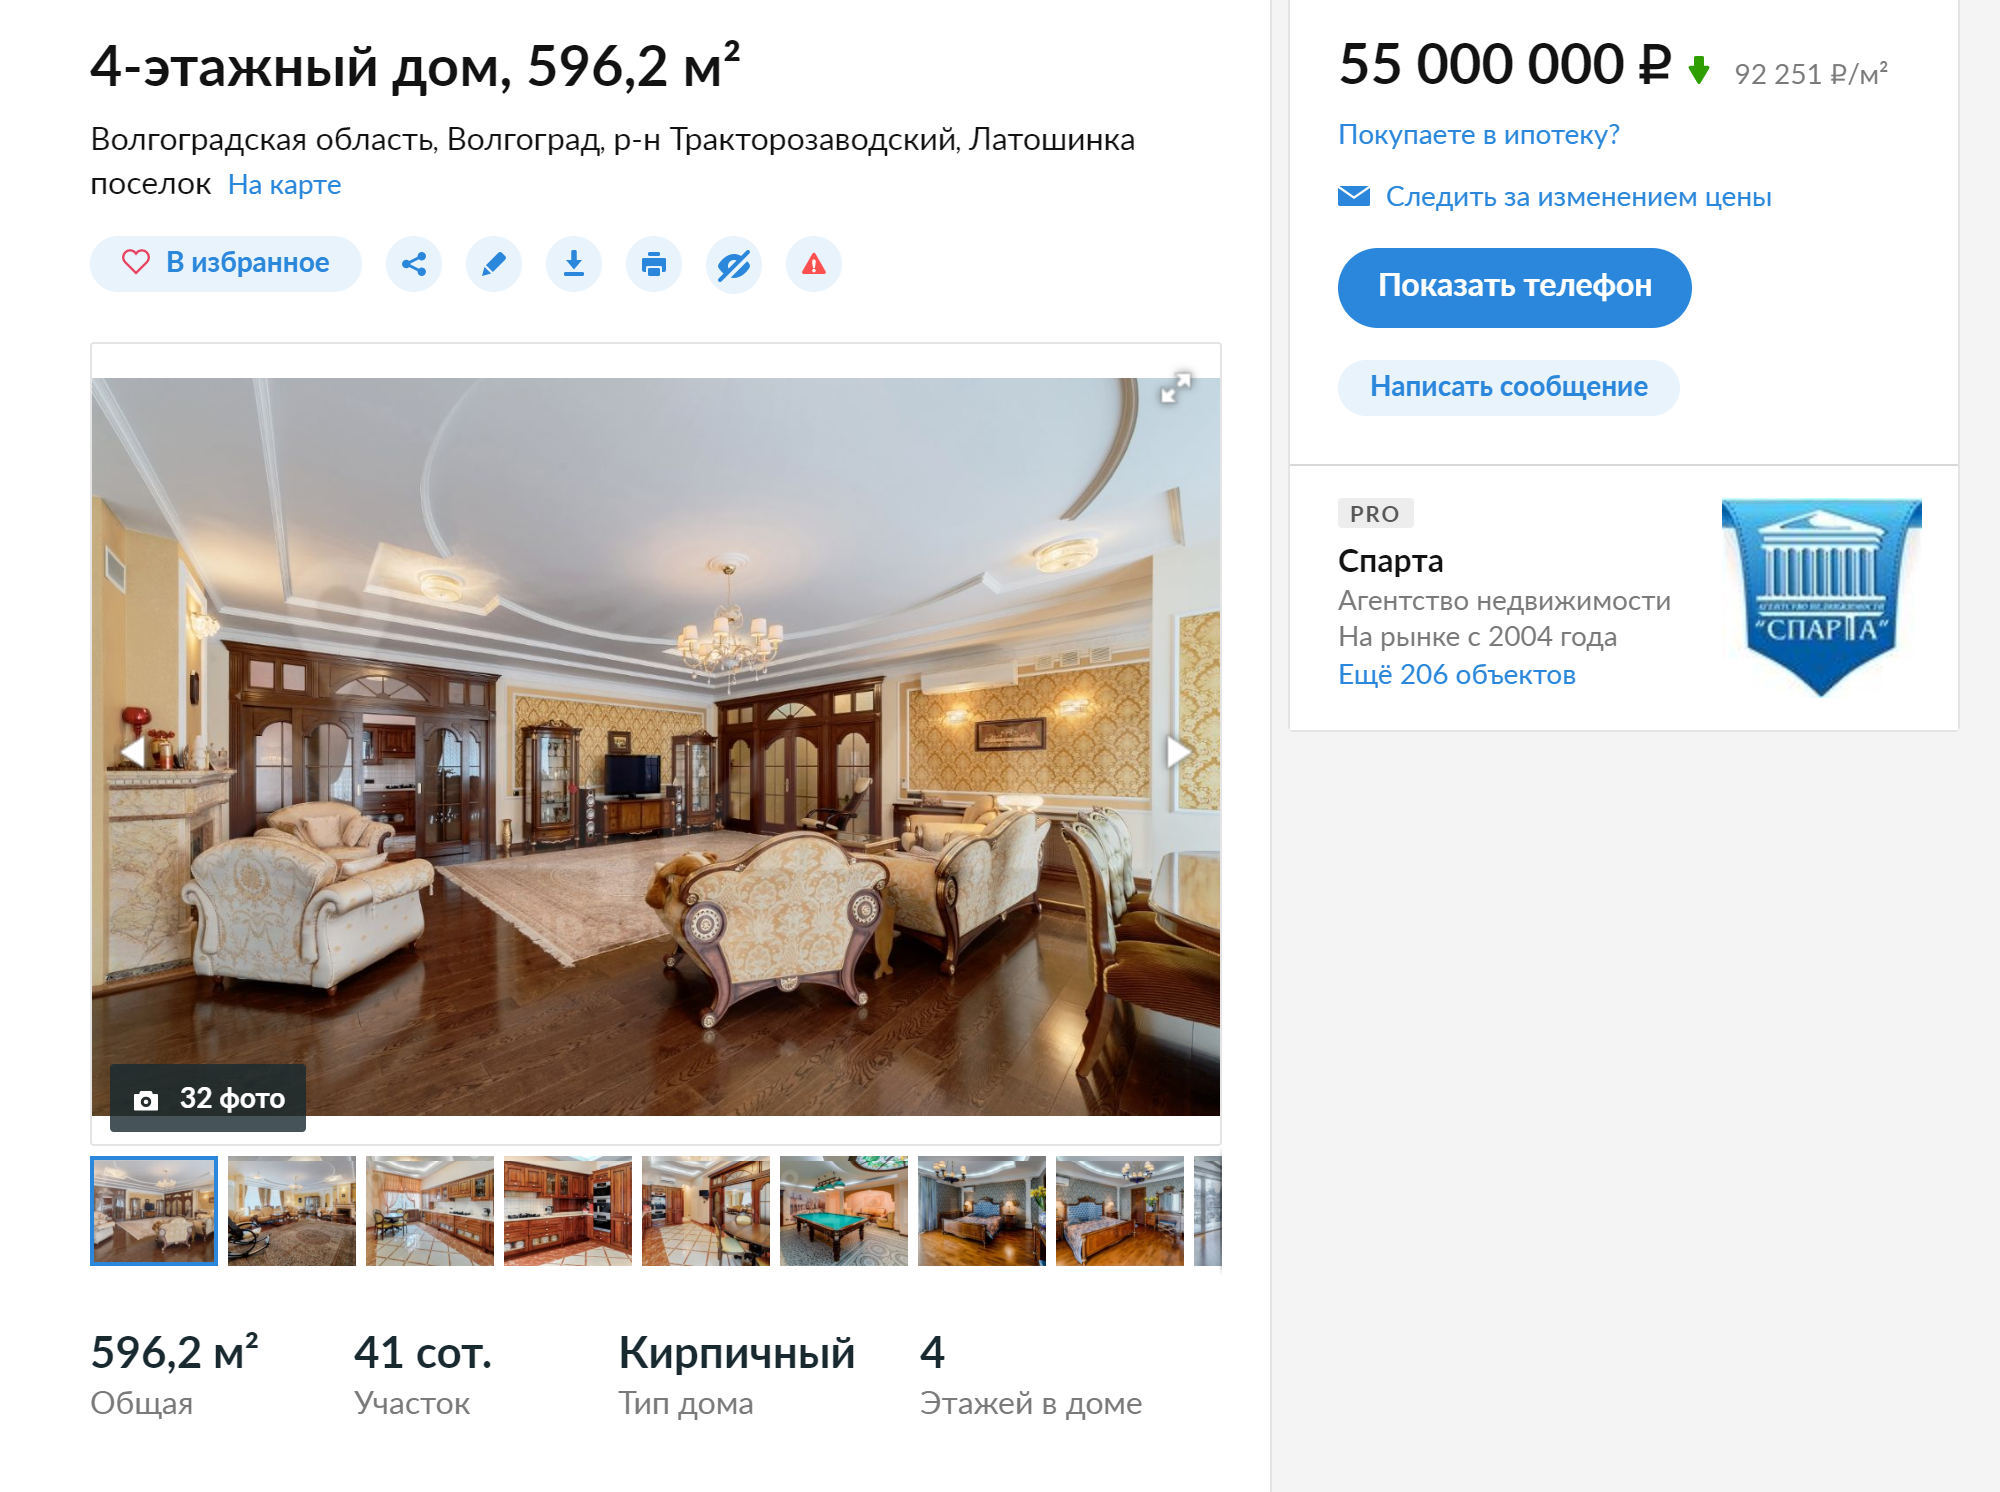 Самый дорогой коттедж в «Латошинке» за 55 млн рублей — четыре этажа, бильярдная, кинотеатр, бассейн и участок площадью 4100 м²